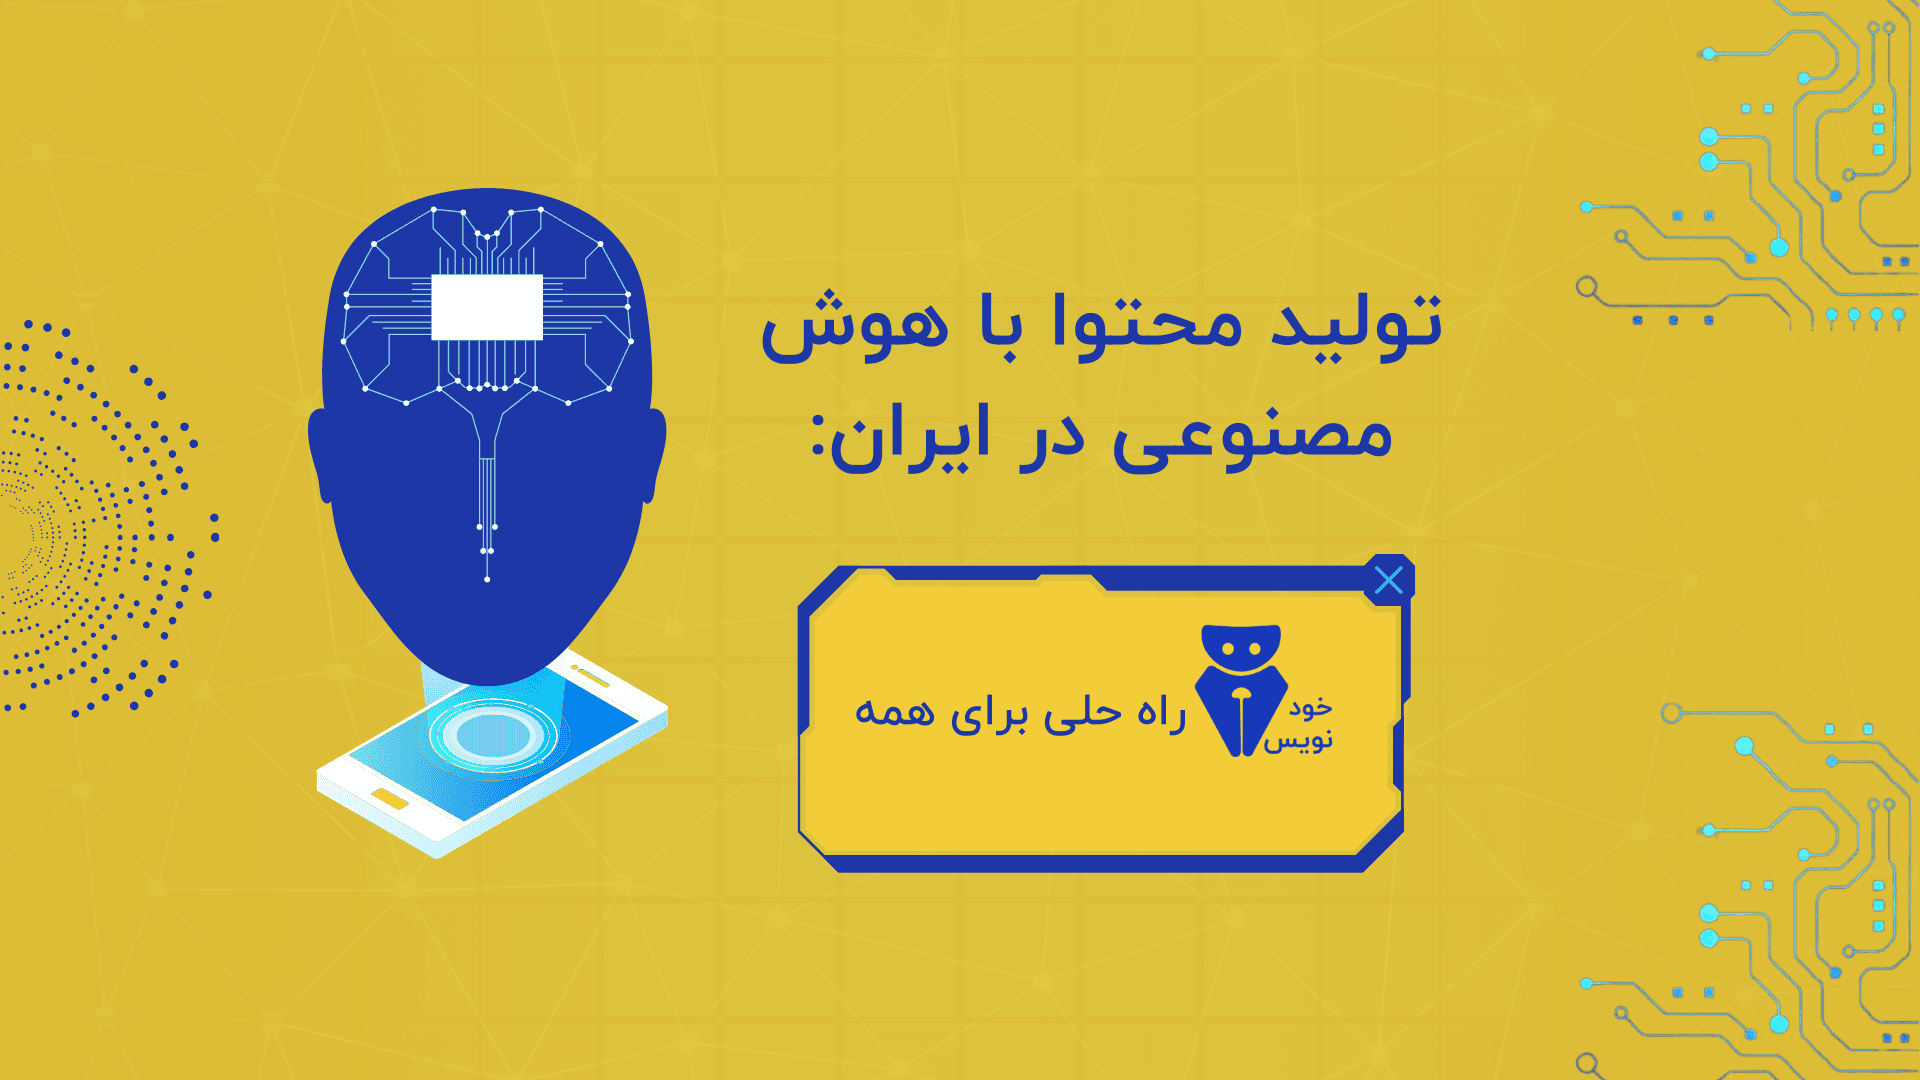 تولید محتوا با هوش مصنوعی در ایران: خودنویس، راه حلی برای همه